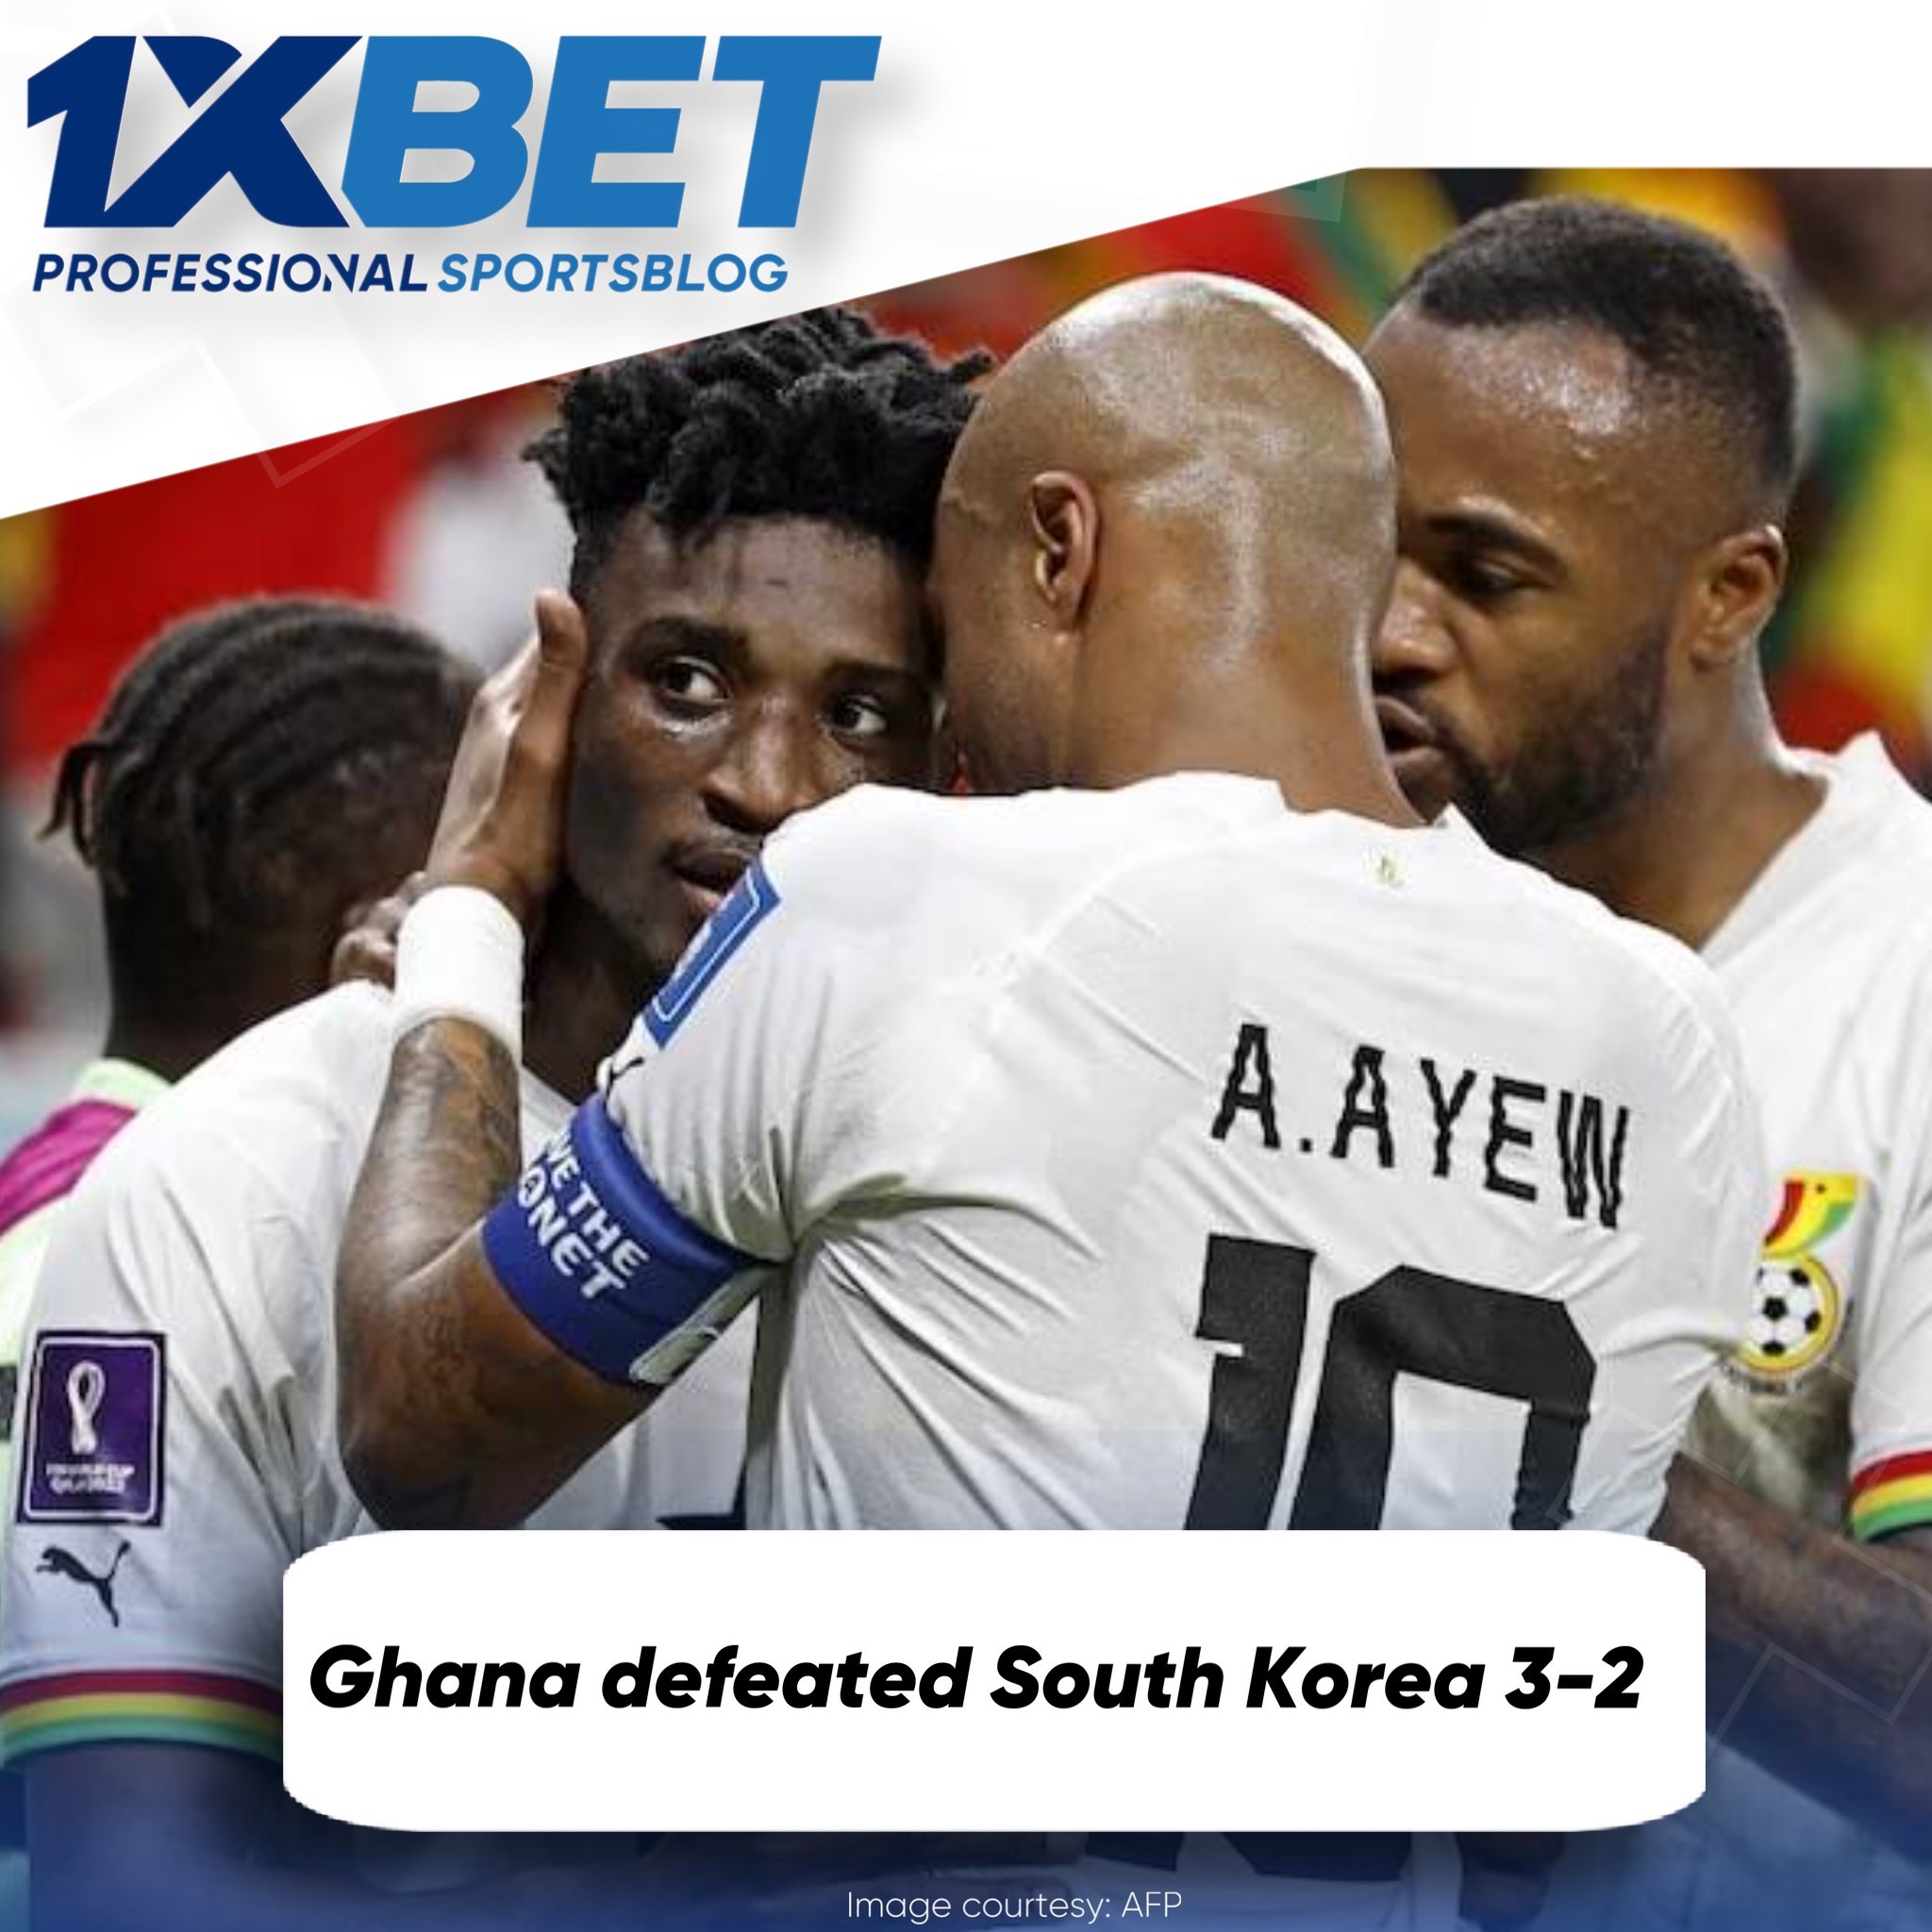 Ghana defeated South Korea 3-2